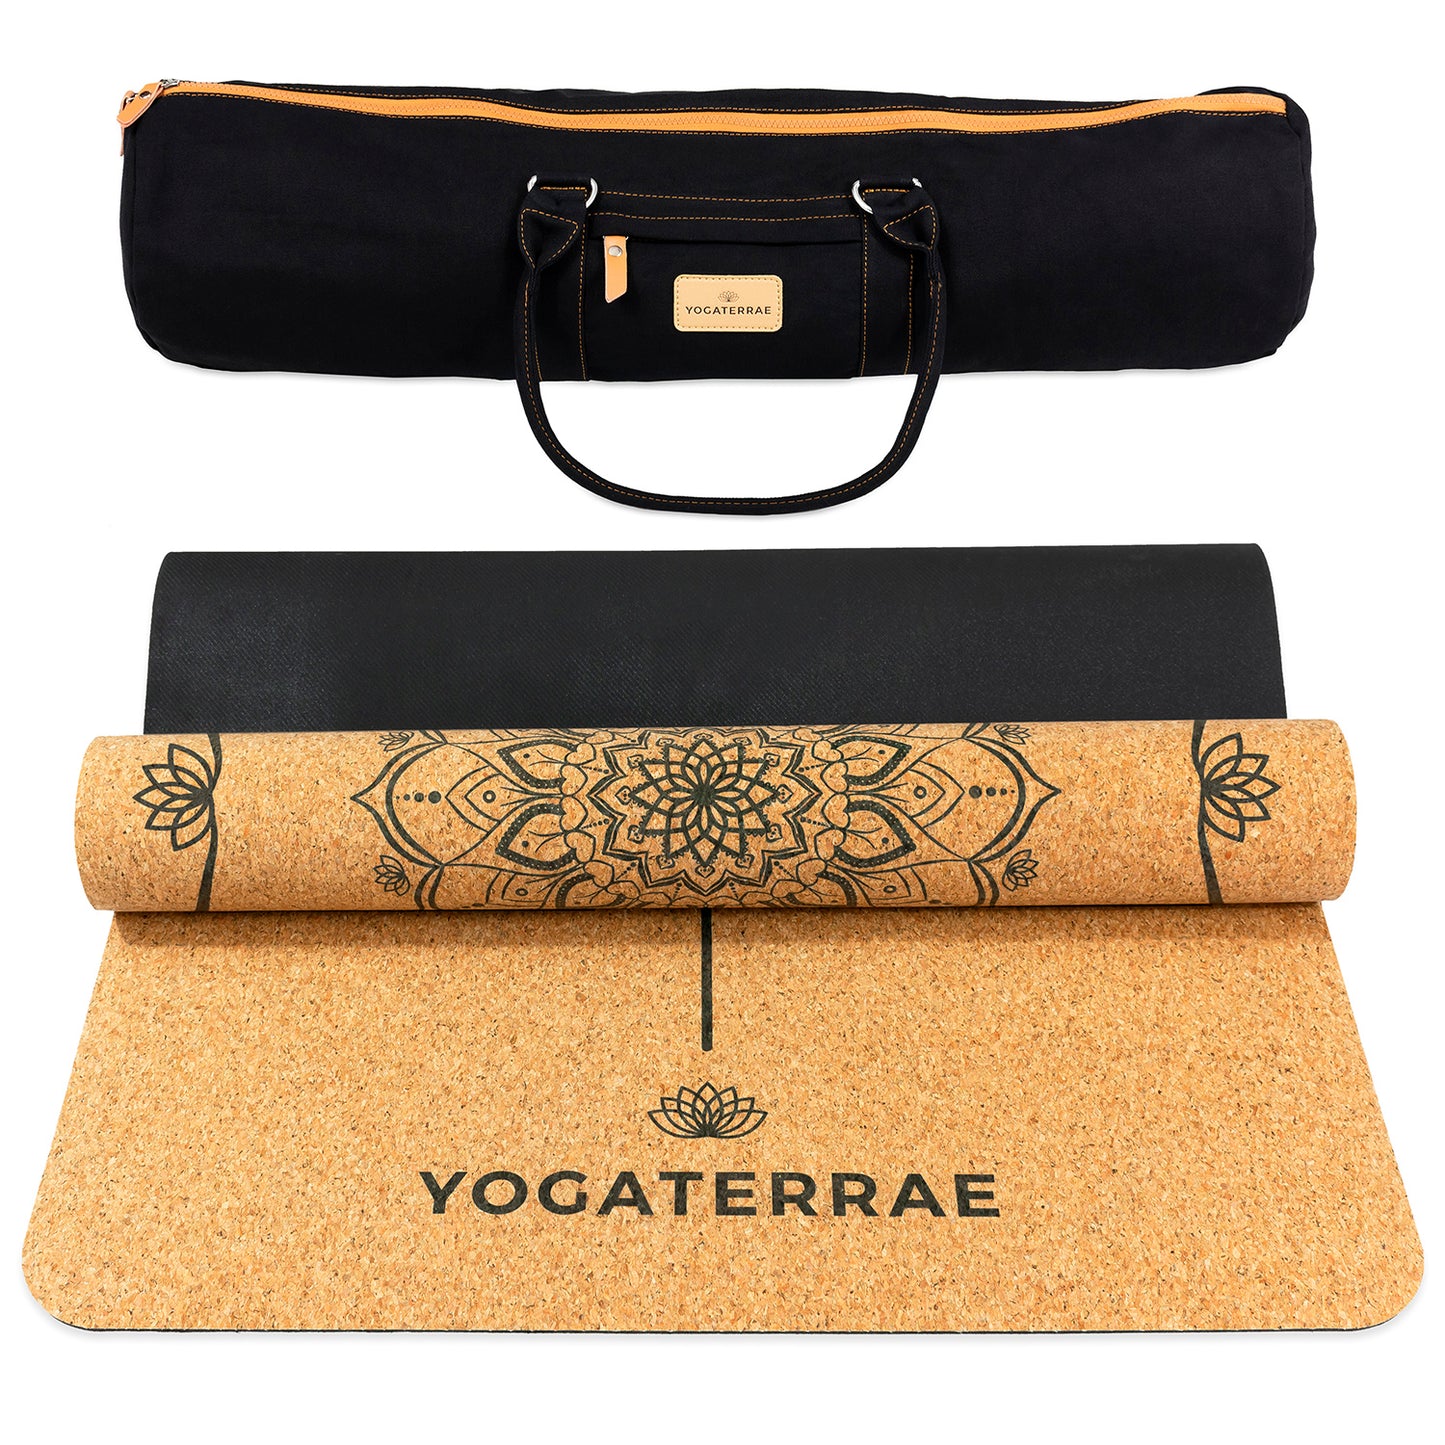 Tapis de yoga liège et caoutchouc naturels antidérapant écologique Mandala avec alignement Body Line et sac de yoga couture coton YOGATERRAE marque française